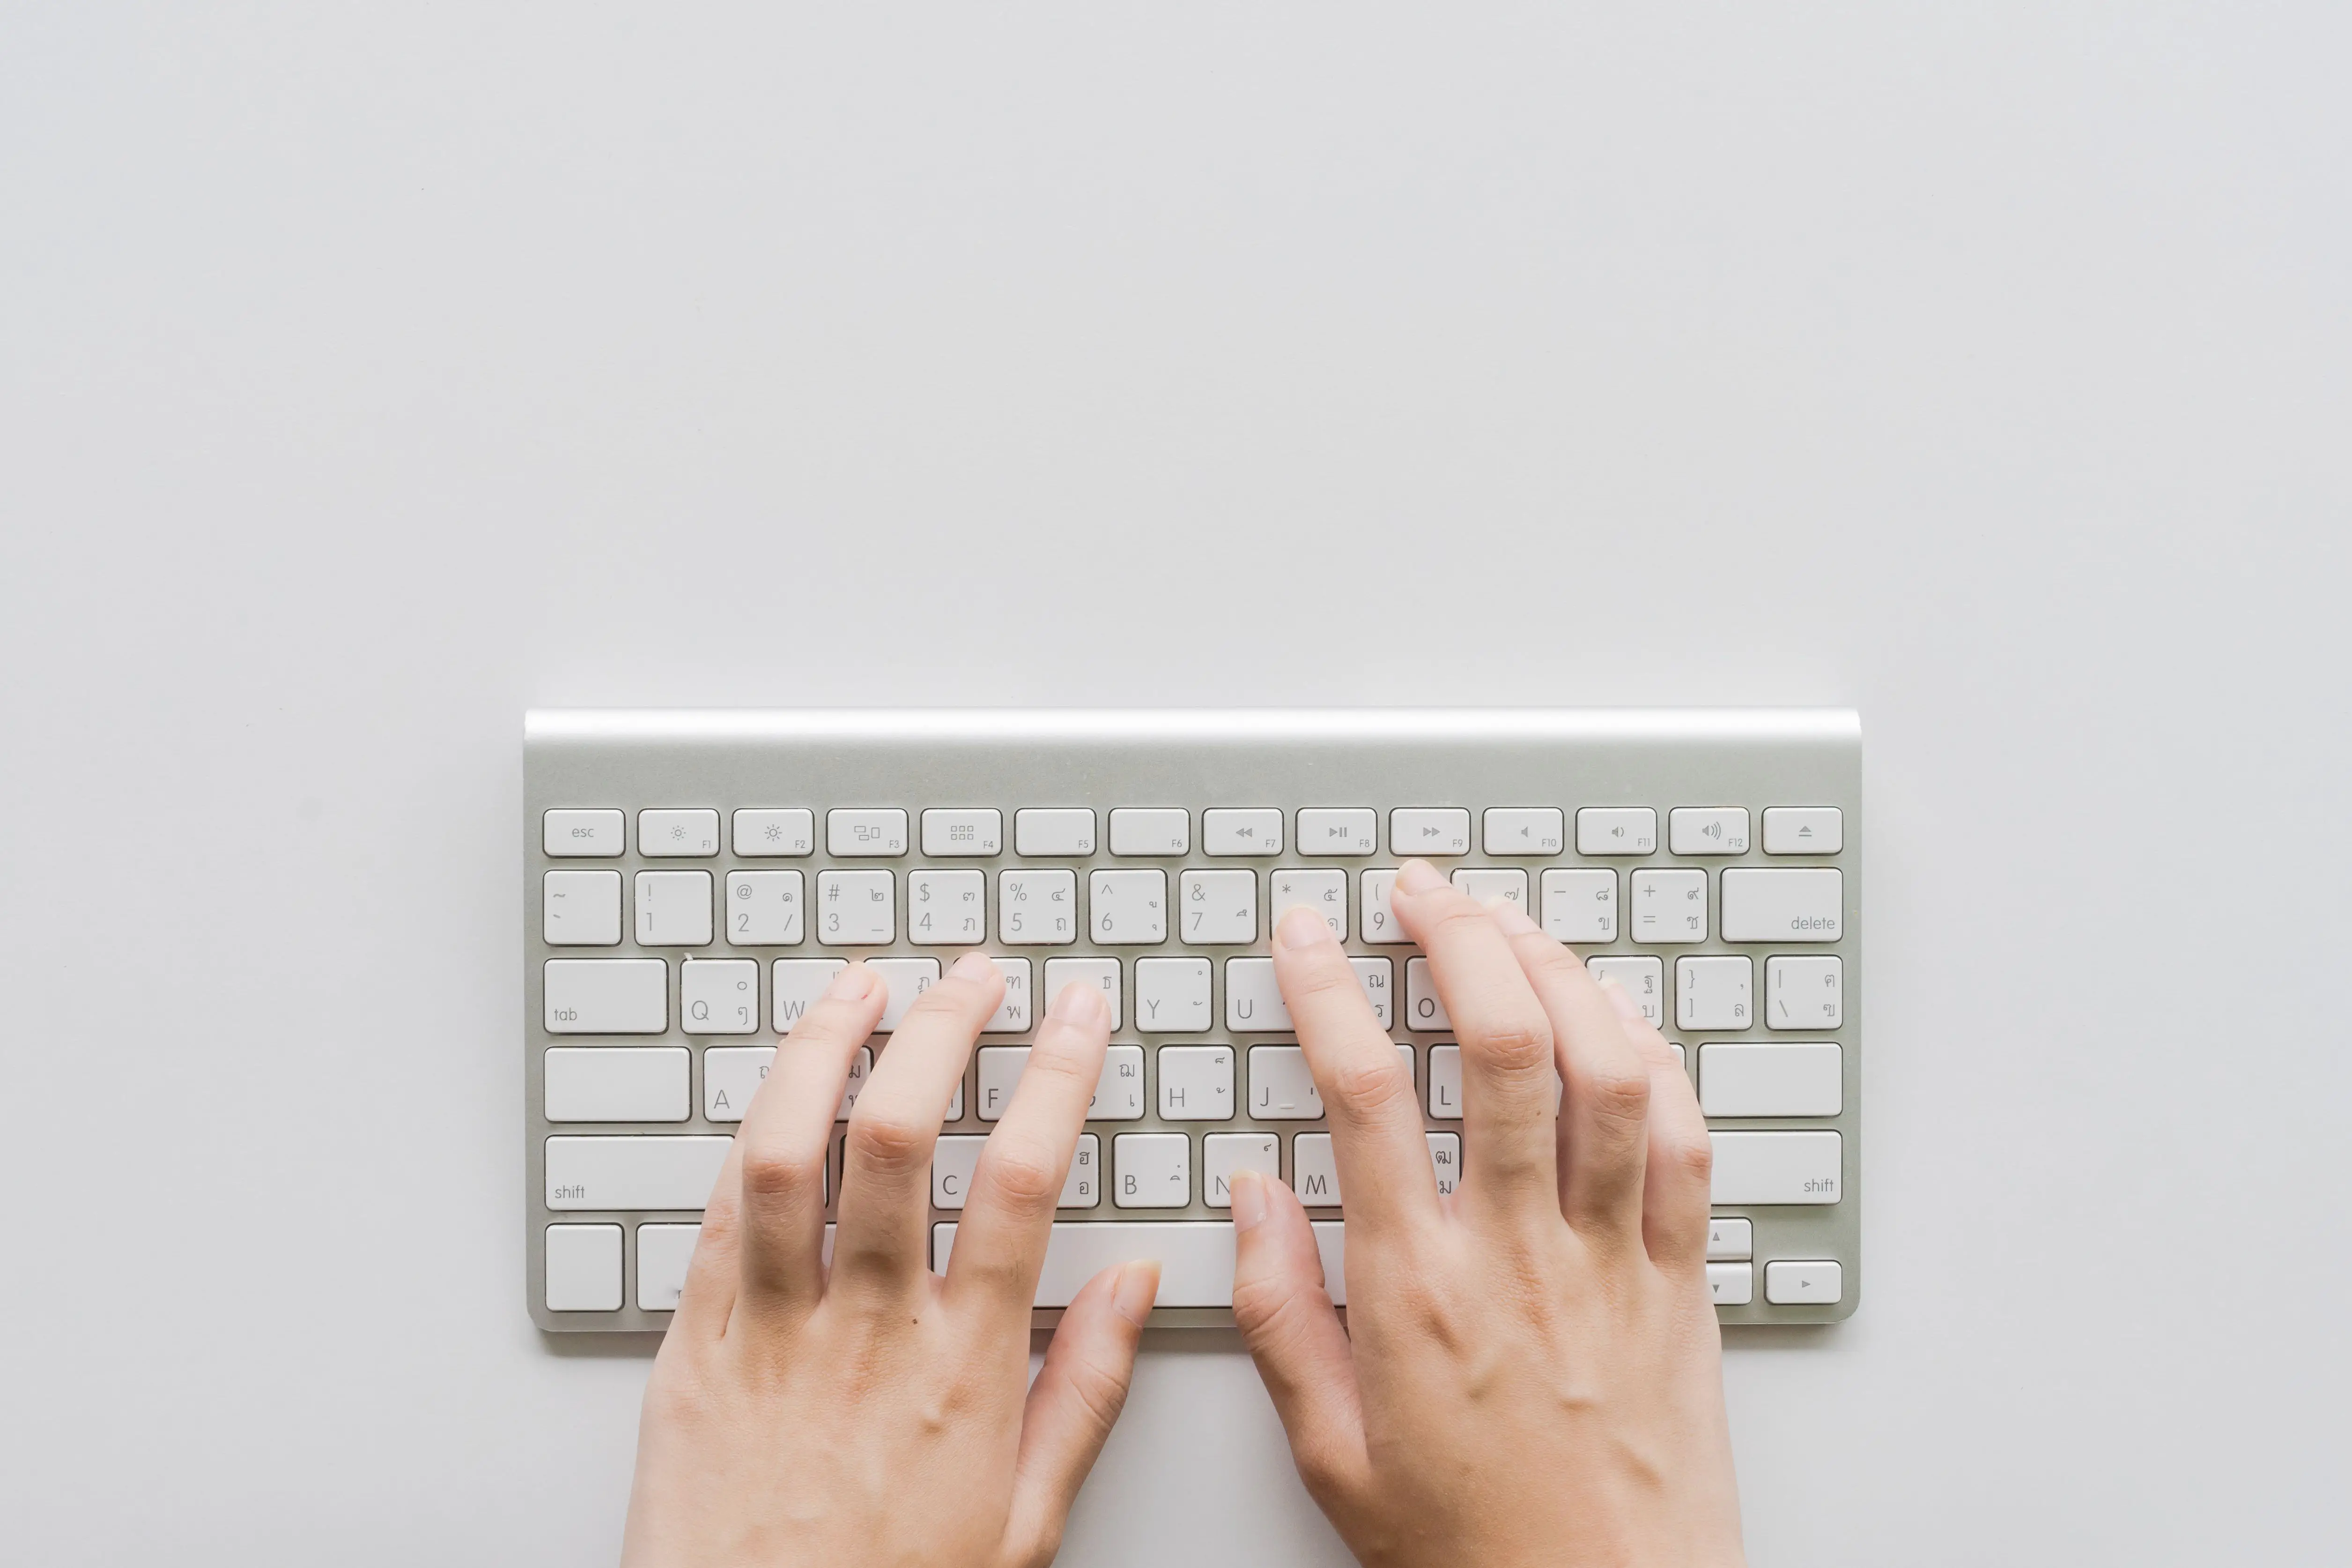 Acima, foto de uma pessoa digitando com as mãos no pequeno teclado do computador